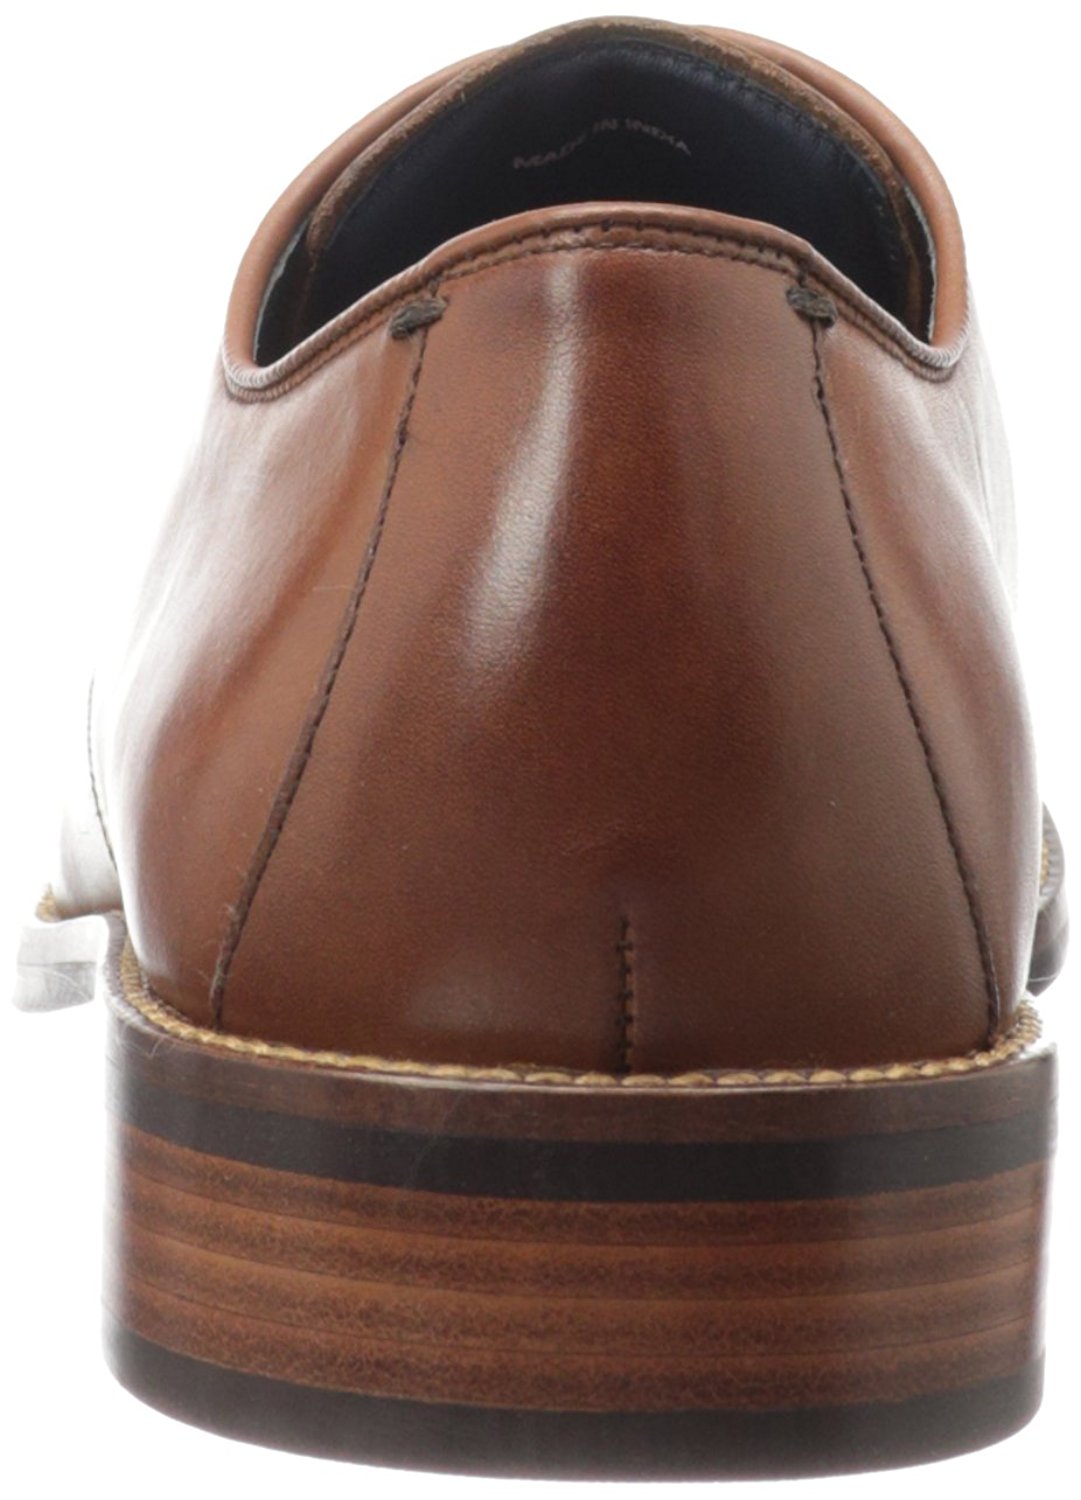 Cole Haan Men's Shoes Lenox Hill Cap Leather Lace Up, British Tan, Size